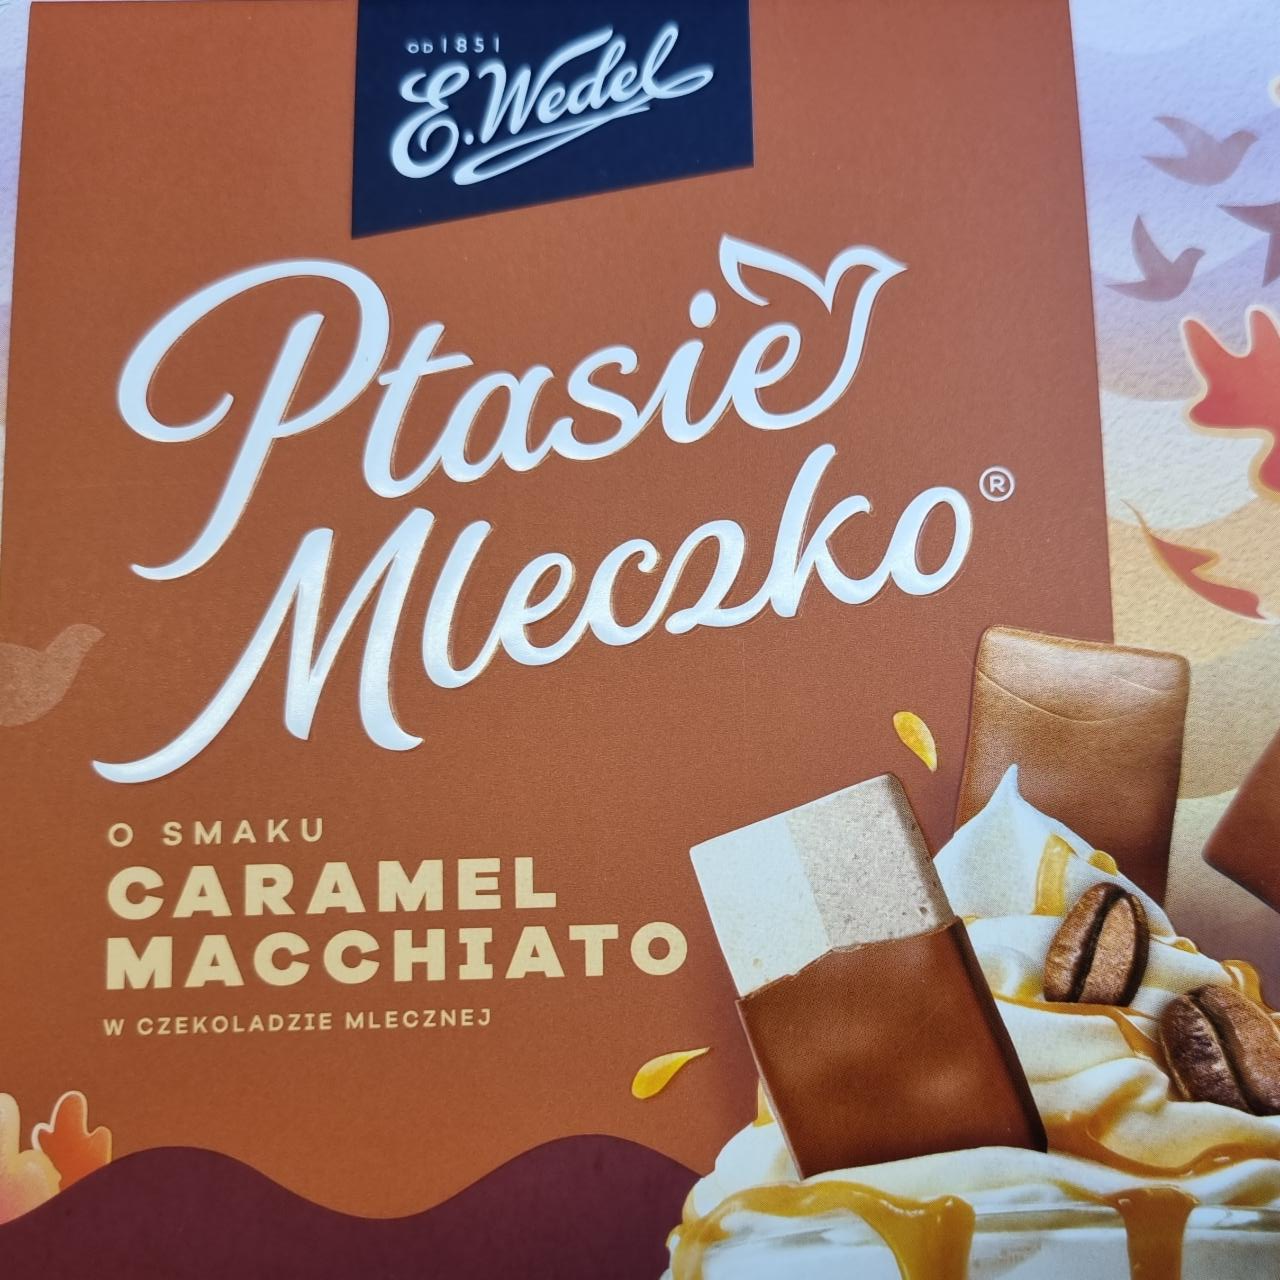 Fotografie - Ptasie Mleczko o smaku caramel macchiato E.Wedel